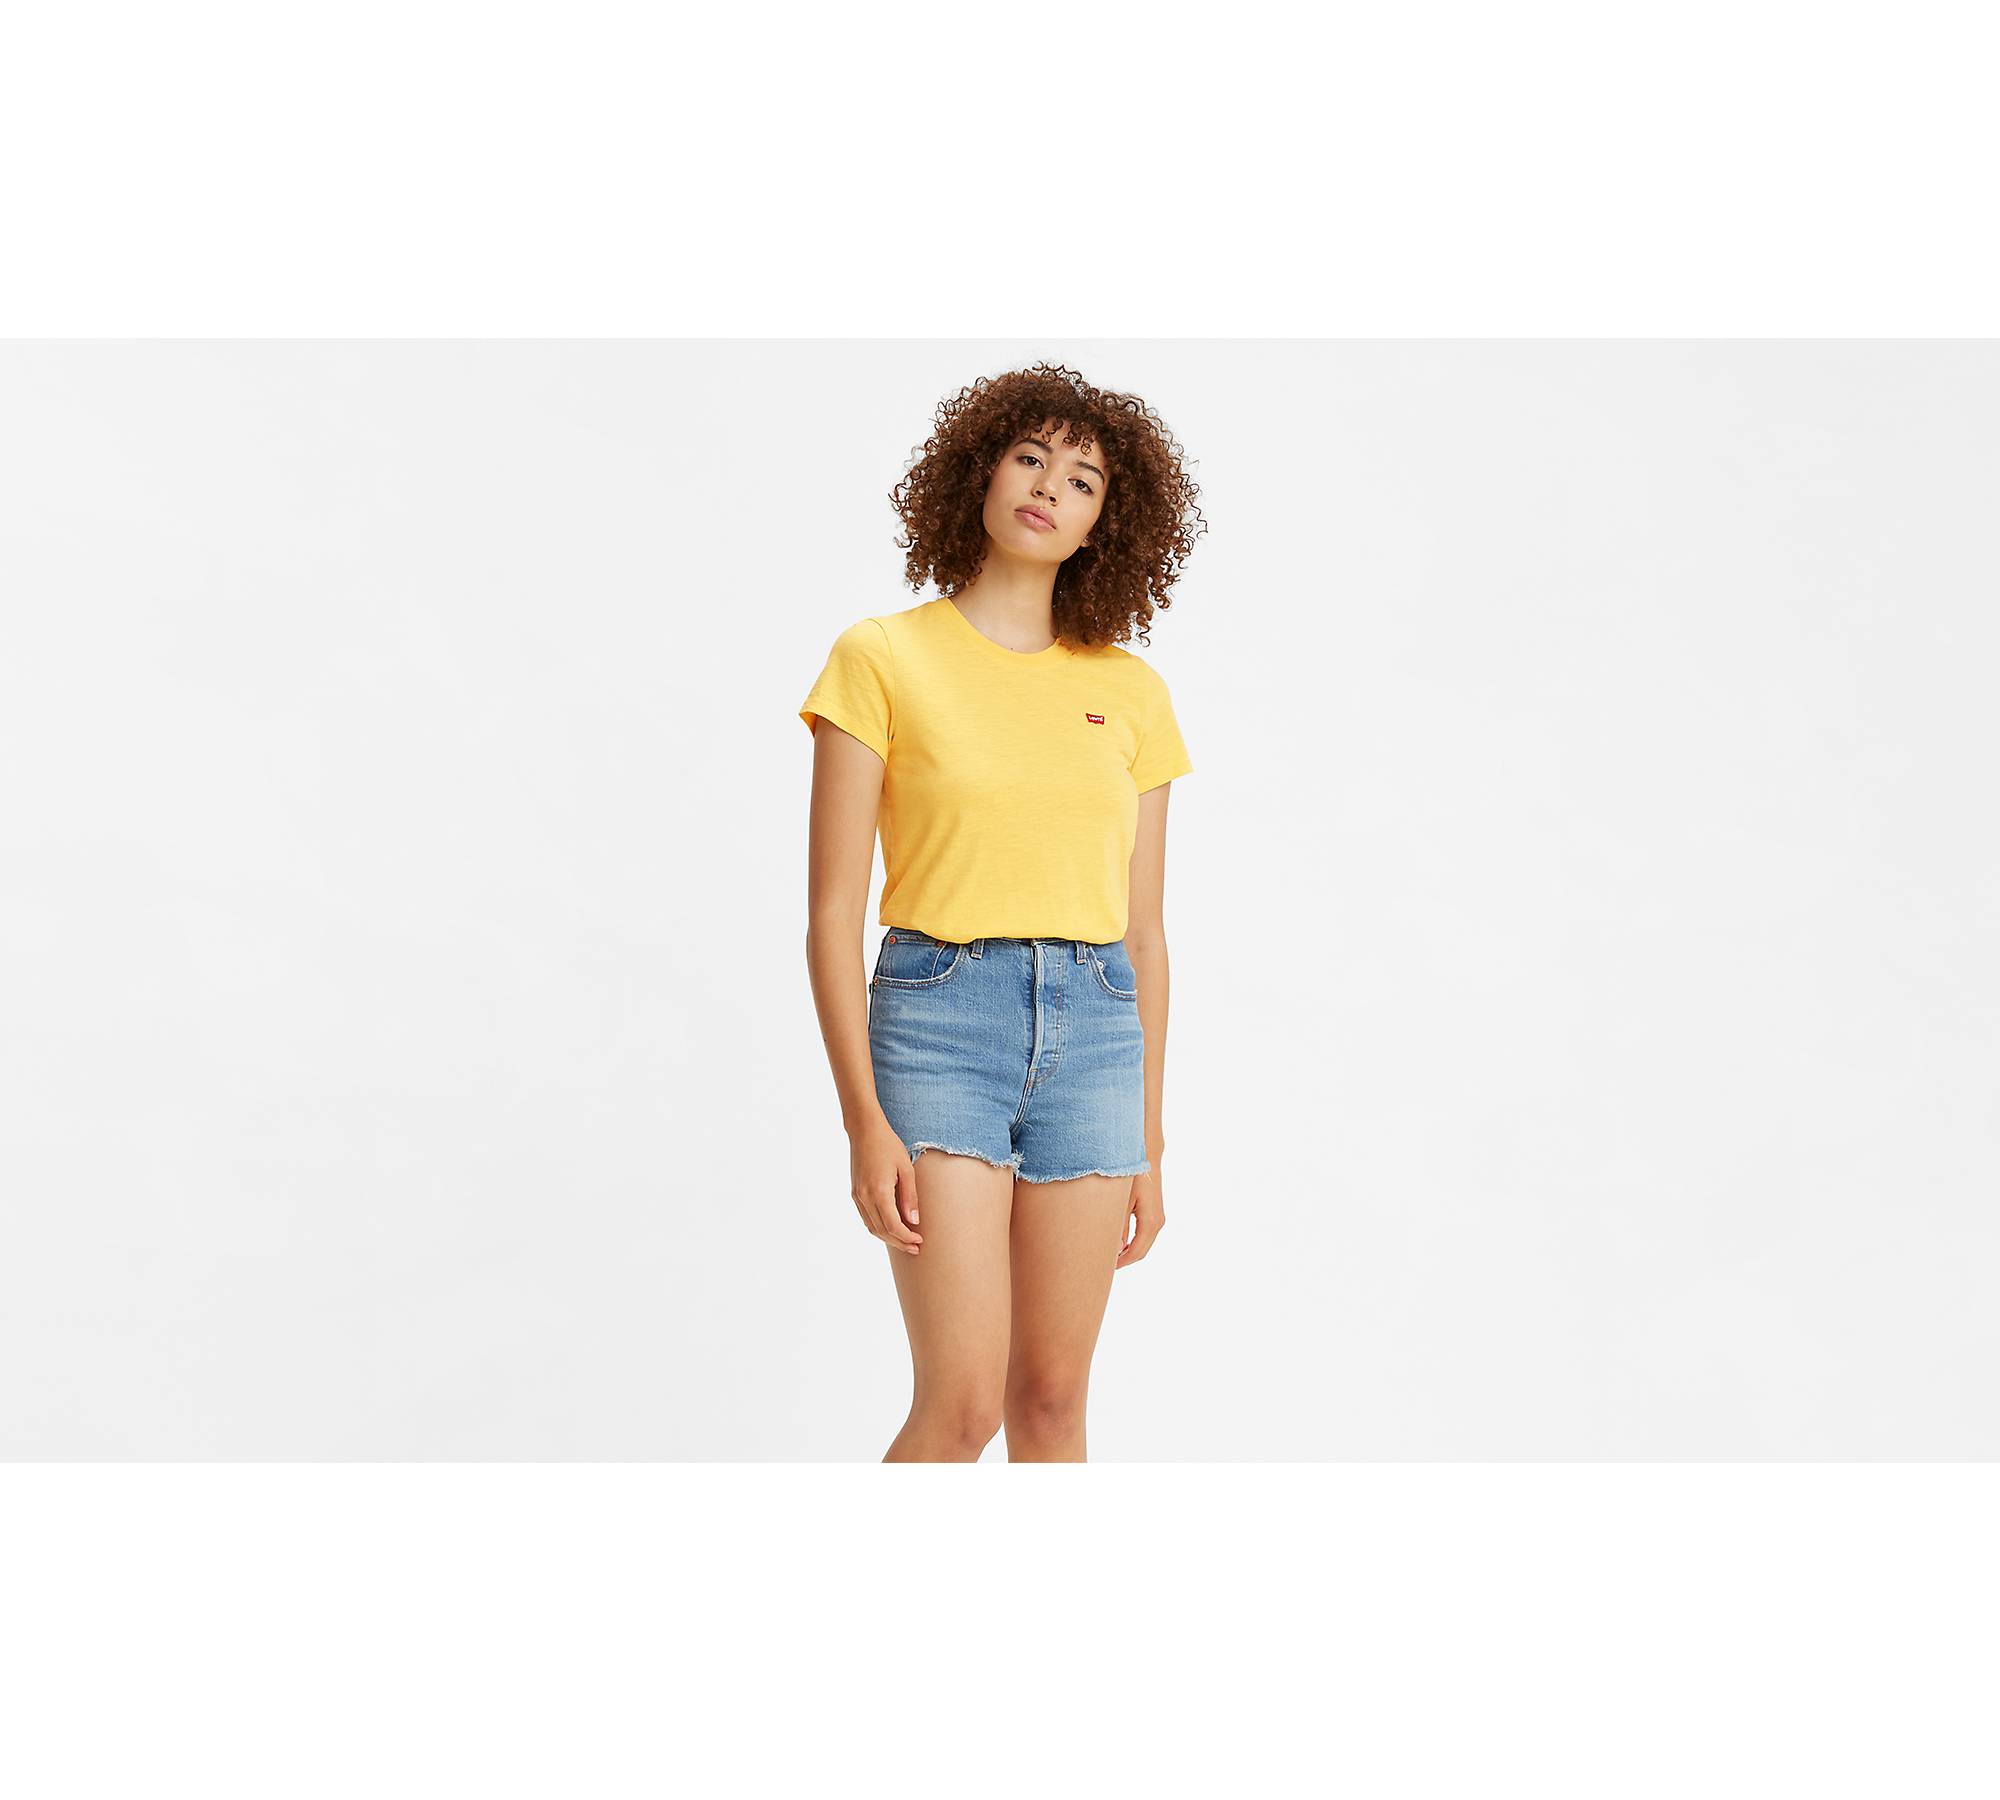 T-shirt Cropped Yellow Wonderful